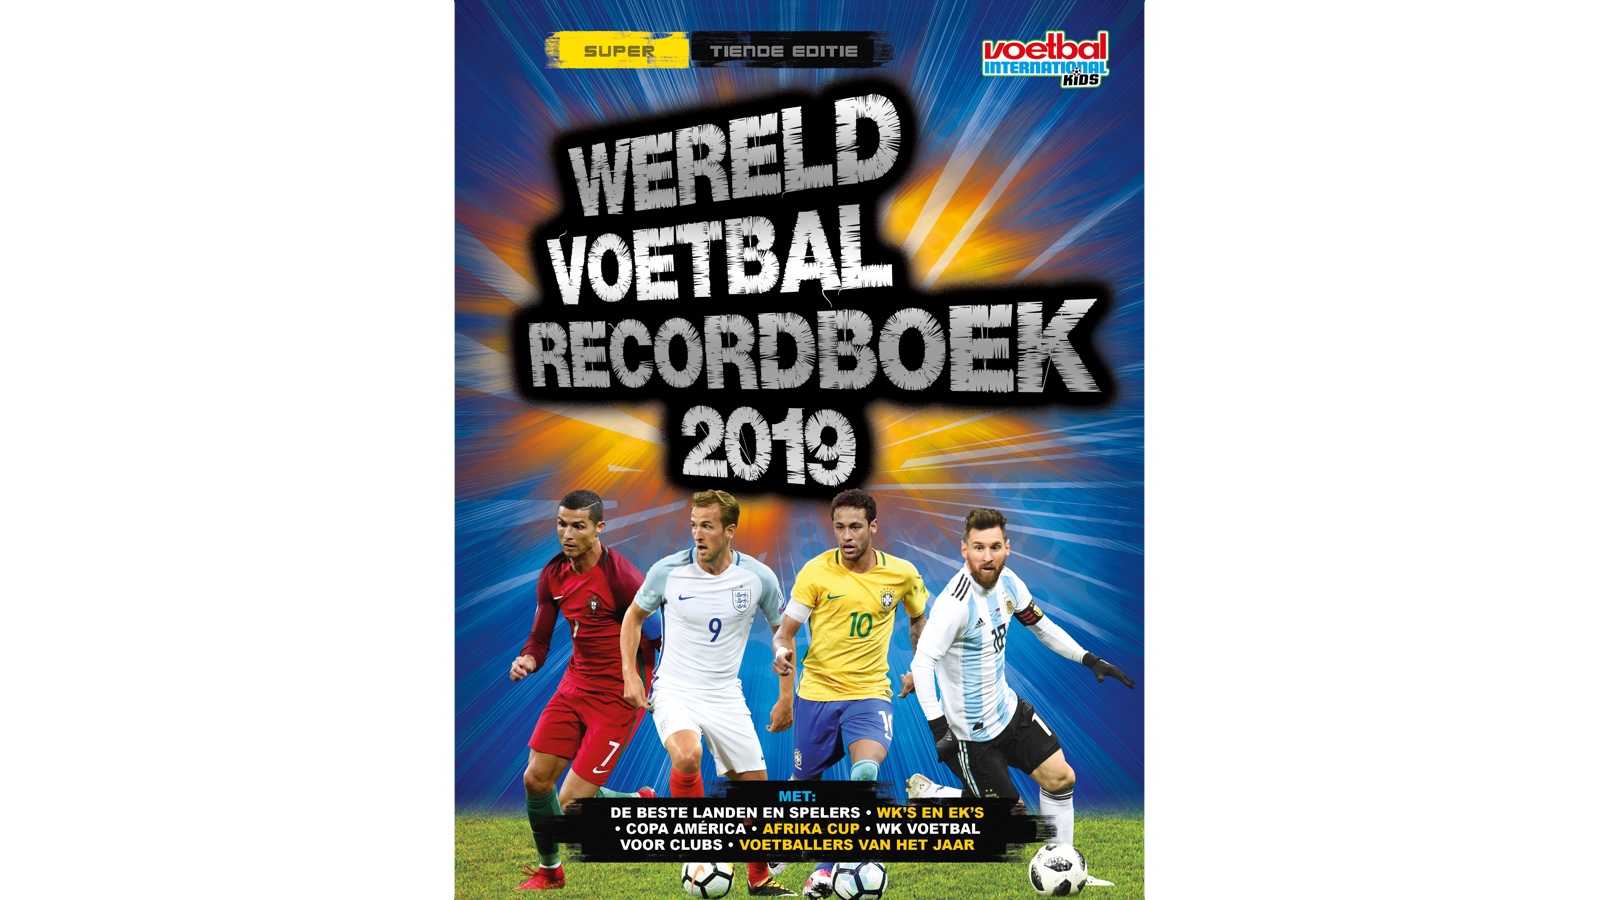 Wereld Voetbal Recordboek 2019